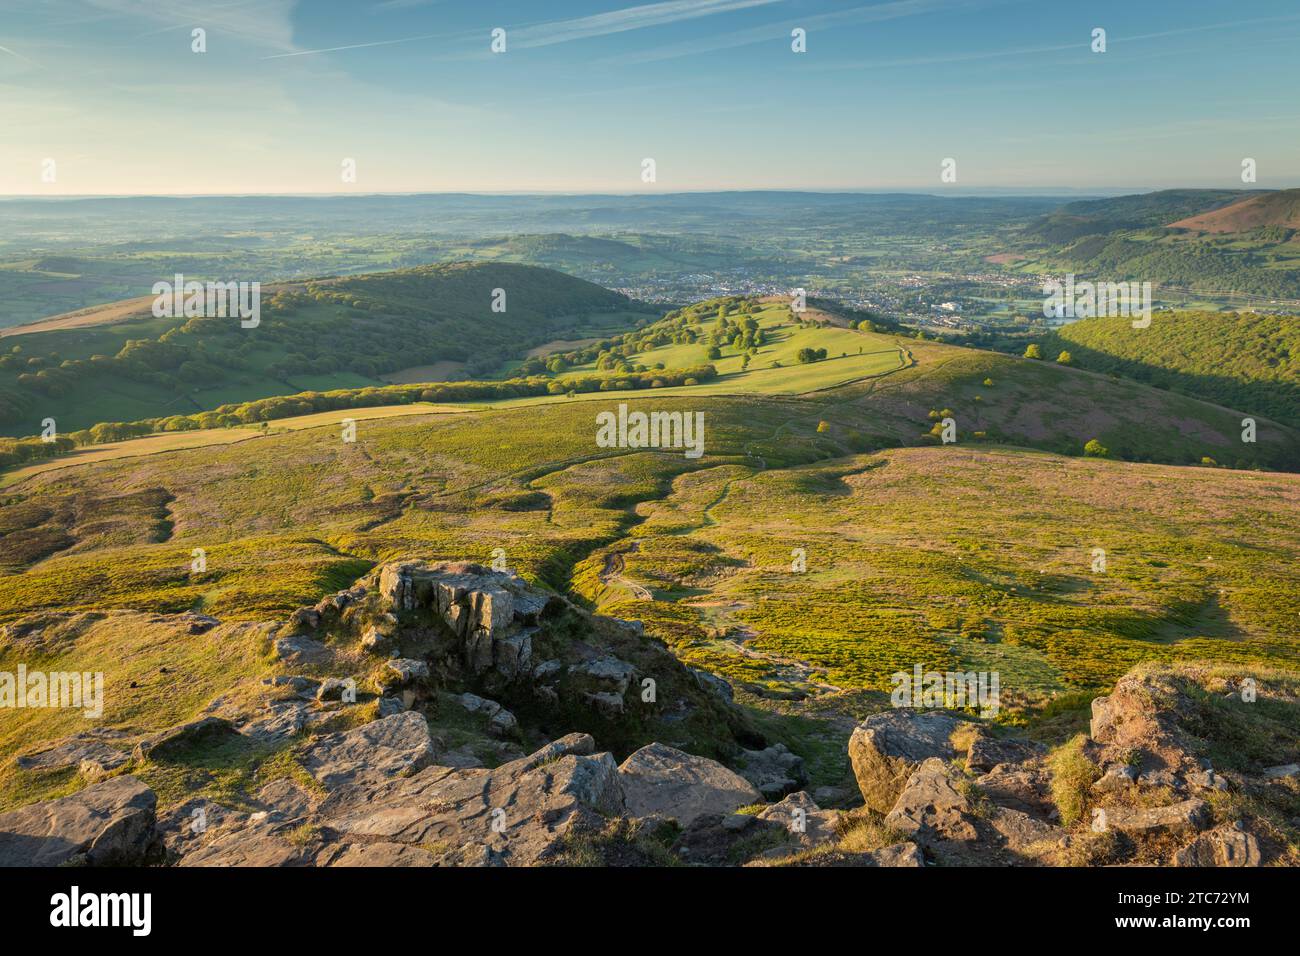 Vue depuis le sommet de la montagne du pain de sucre à Bannau Brycheiniog, anciennement connu sous le nom de Brecon Beacons, Abergavenny, Powys, pays de Galles, Royaume-Uni. Printemps (mai) Banque D'Images